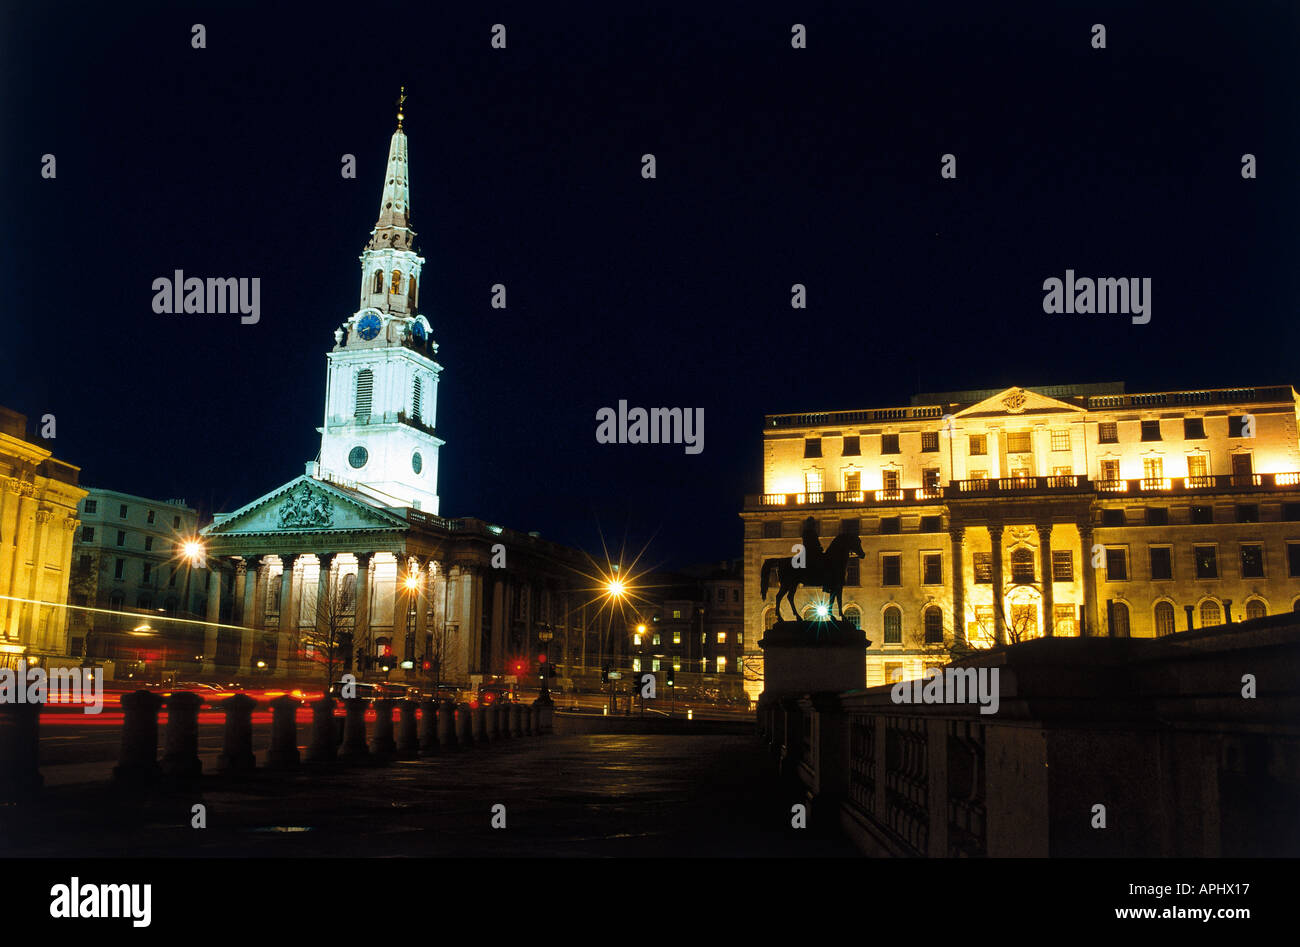 Eine Nacht Zeit Blick auf St. Martin in die Felder Kirche Trafalgar Square in London England Stockfoto